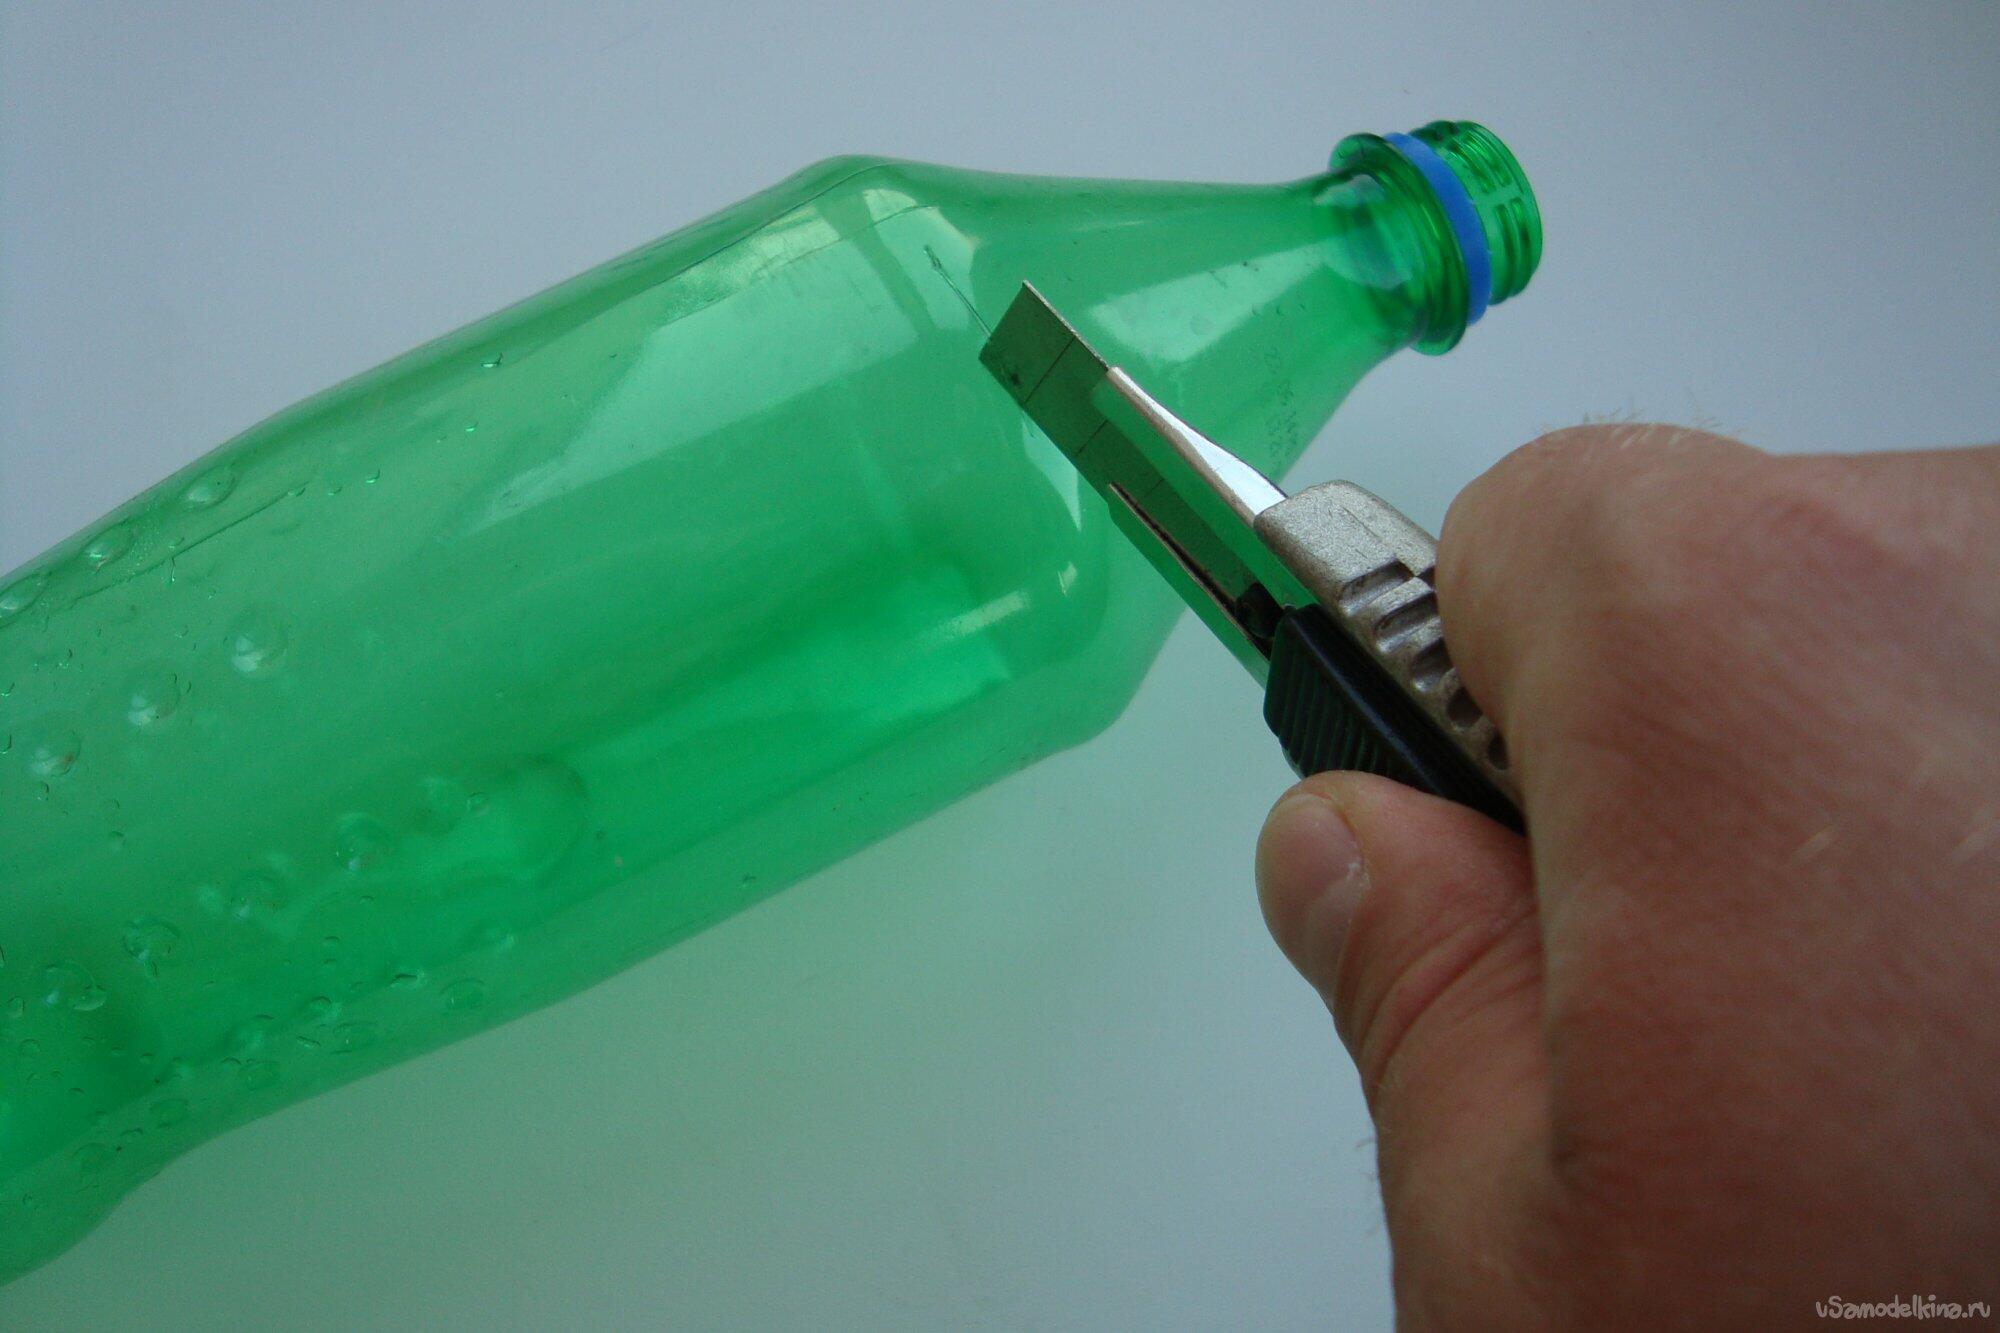 Человек срезает горлышко на пластиковой бутылке